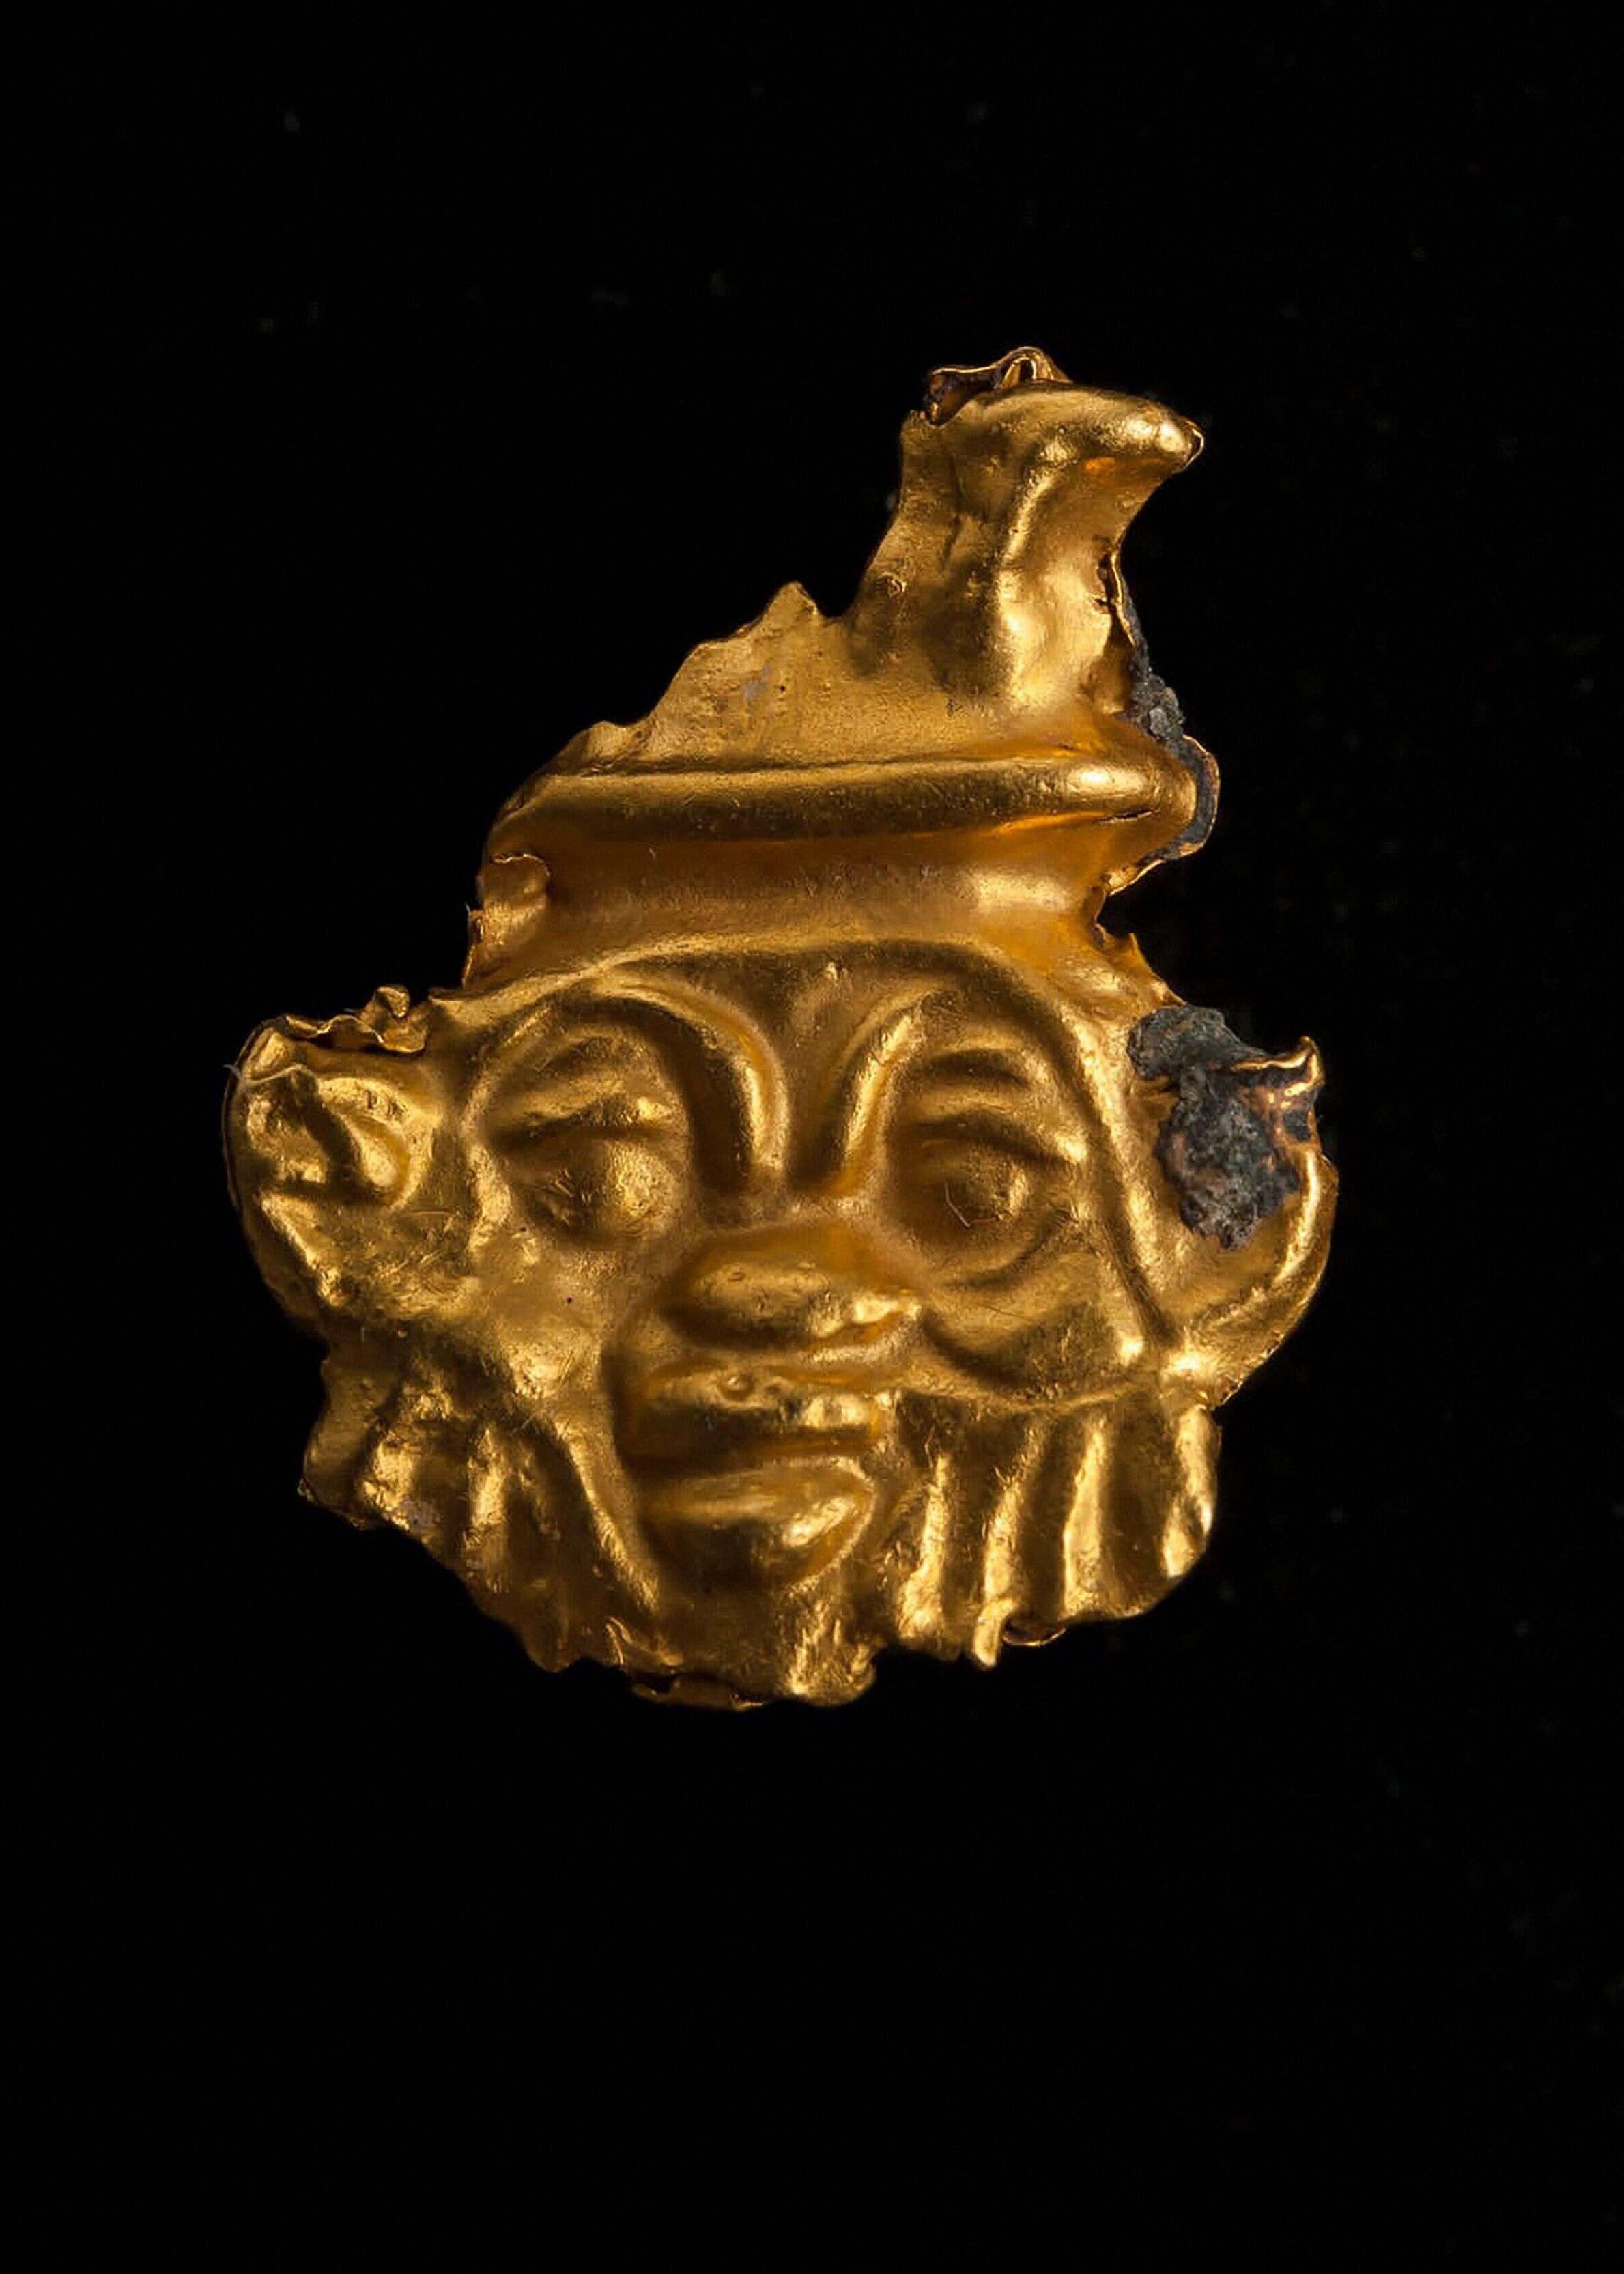 Le fragment d'un objet en or a été découvert.